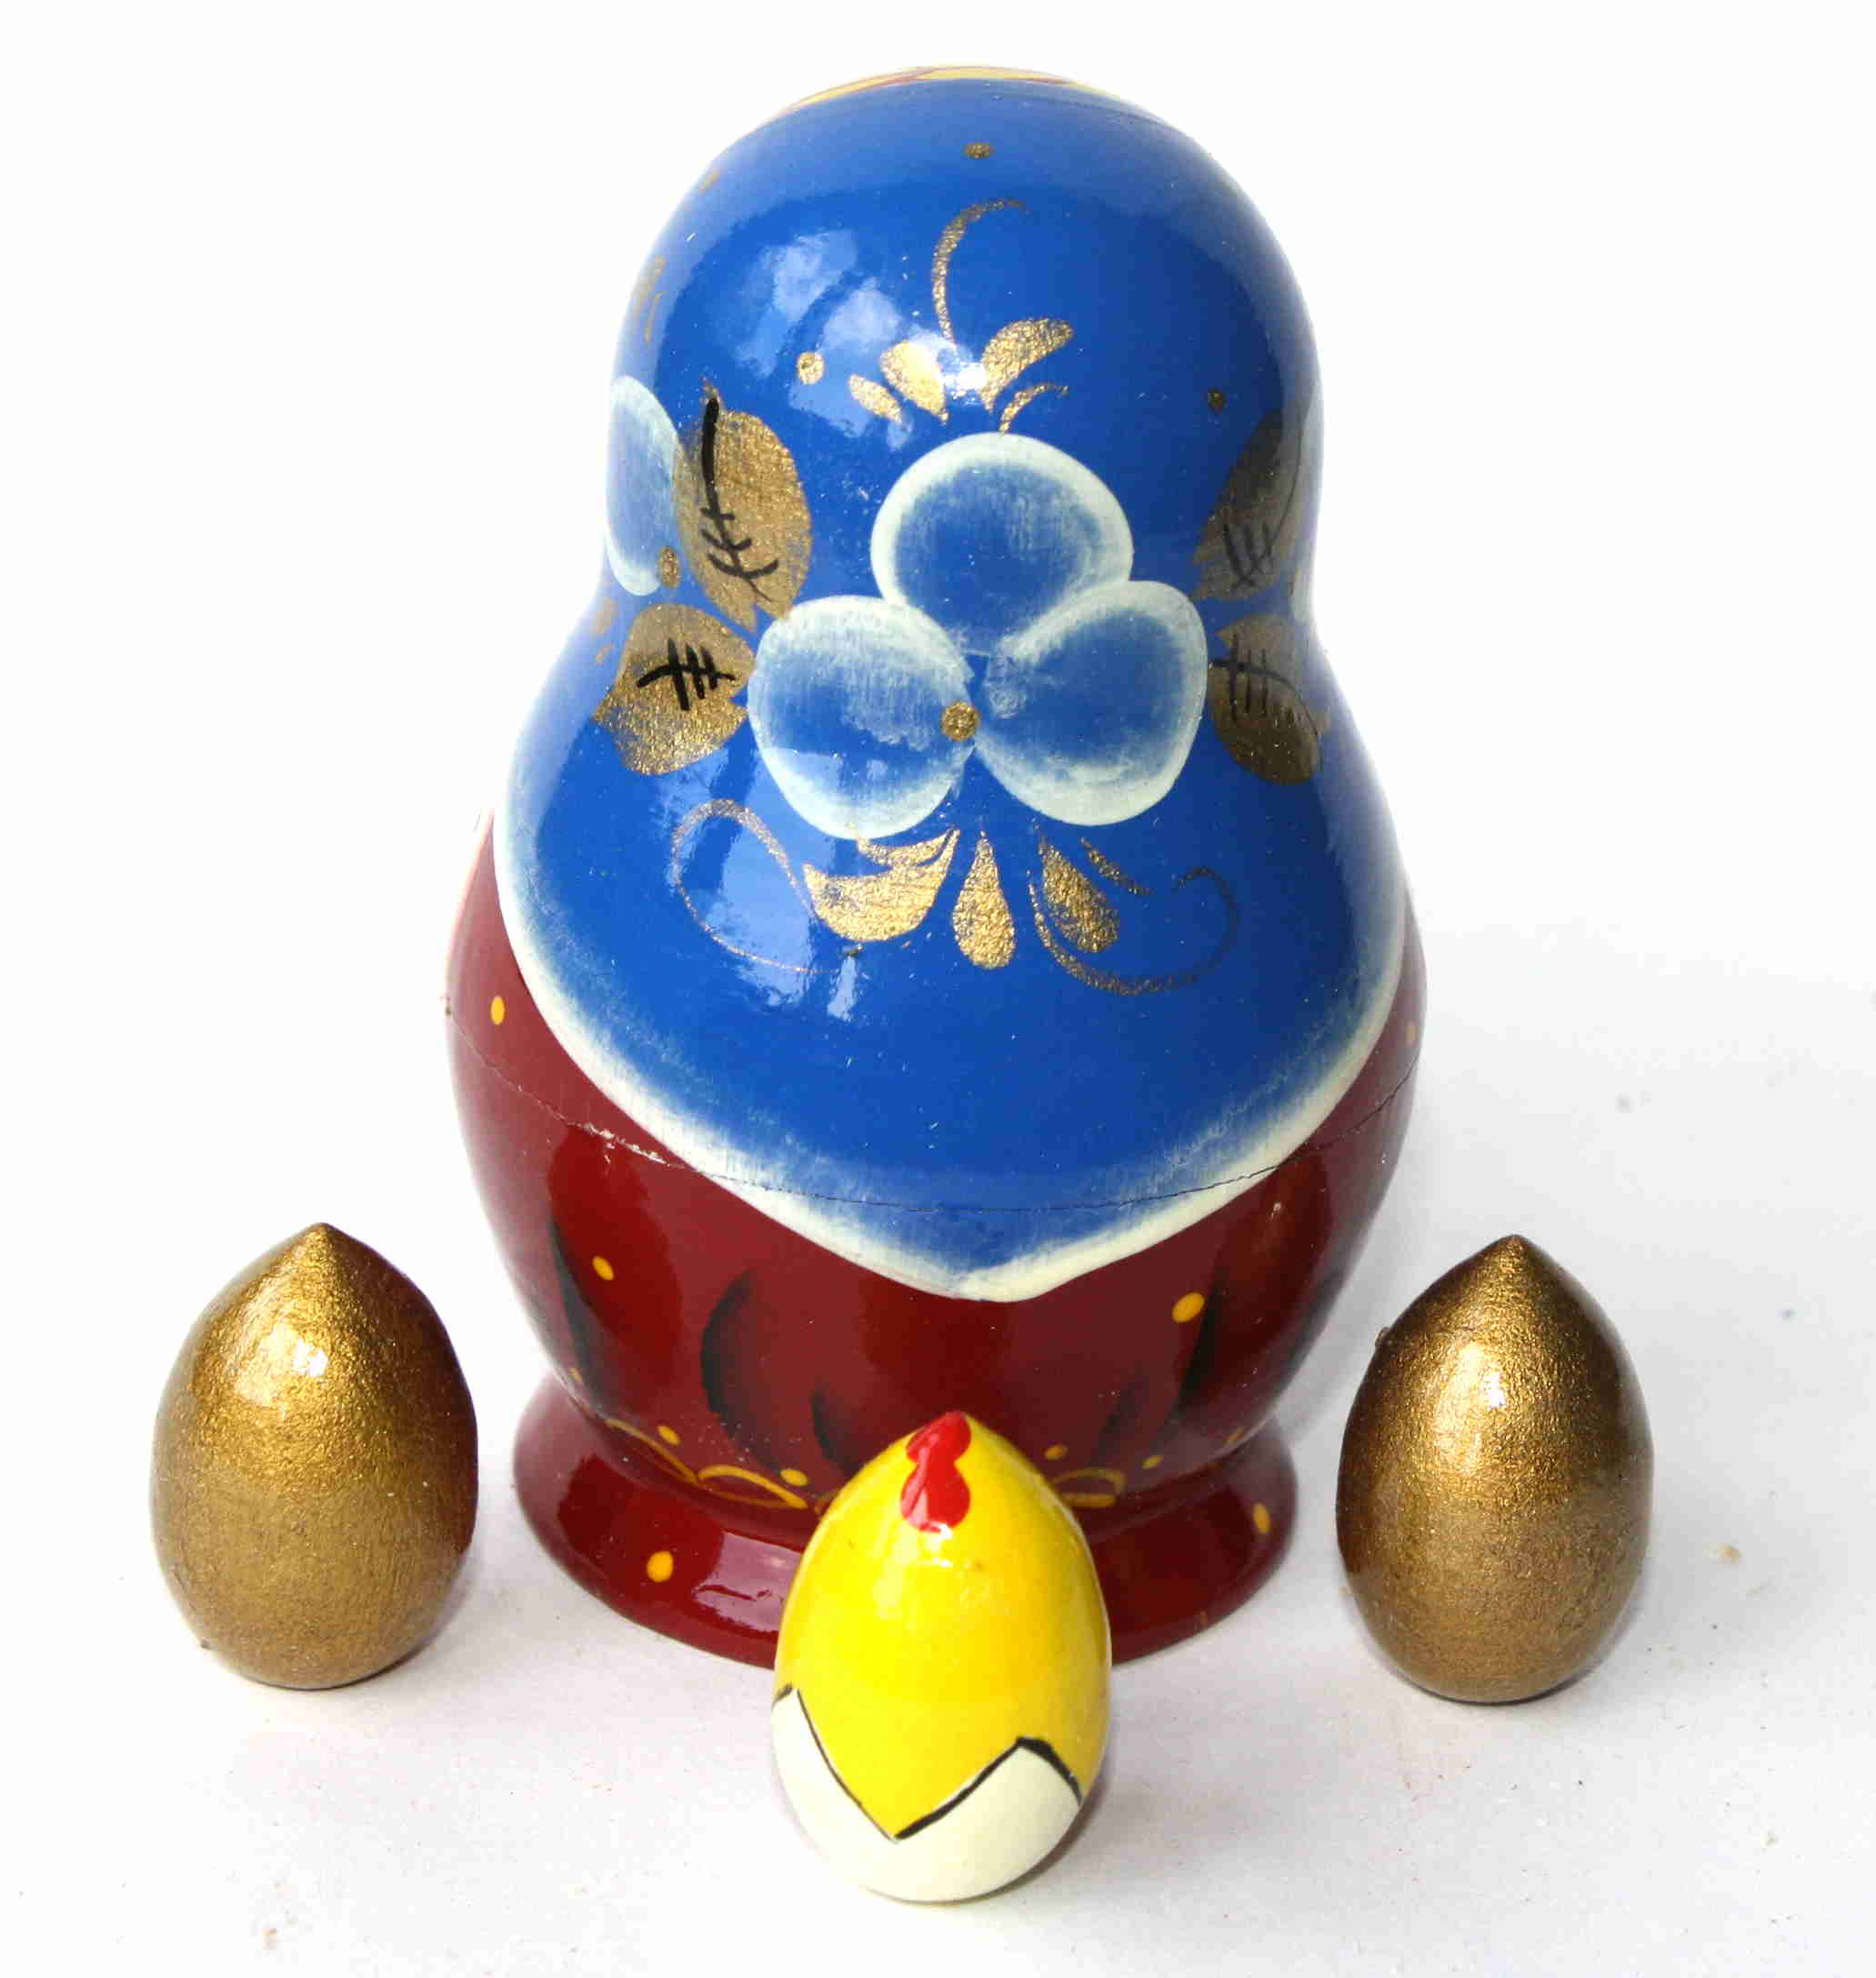 Novelty Matryoshka Hen with three eggs nested inside